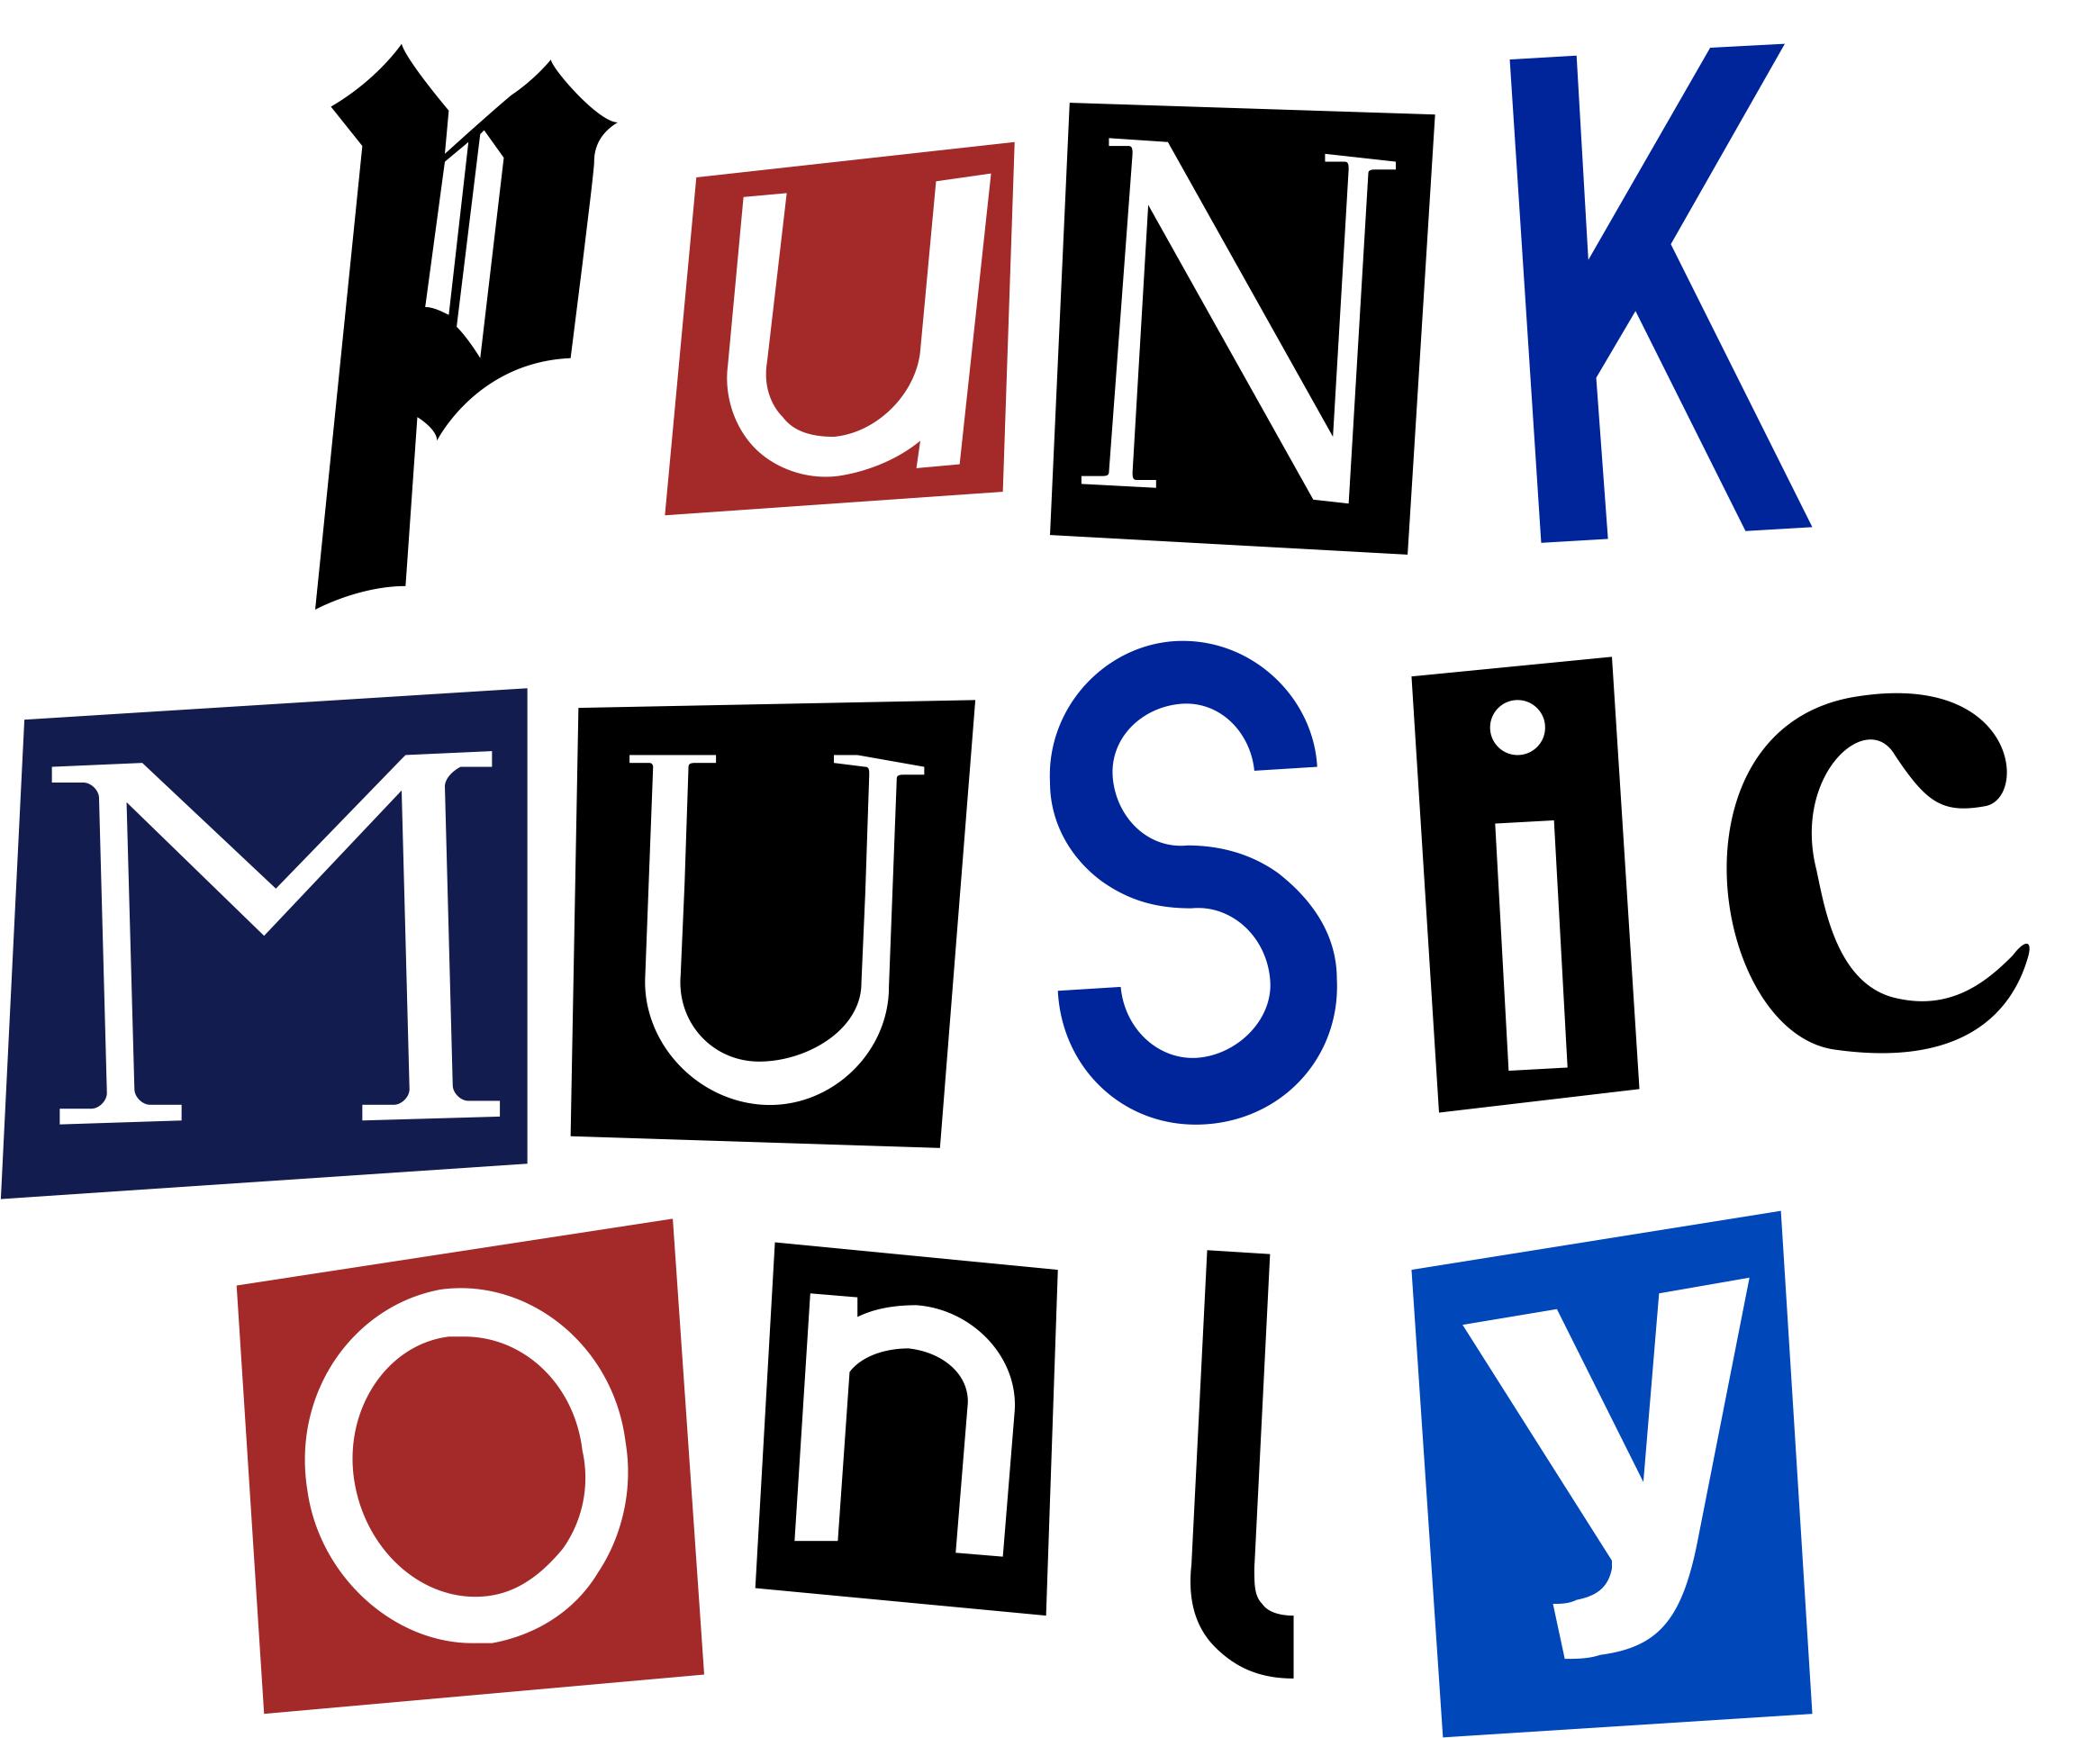 Punk Music